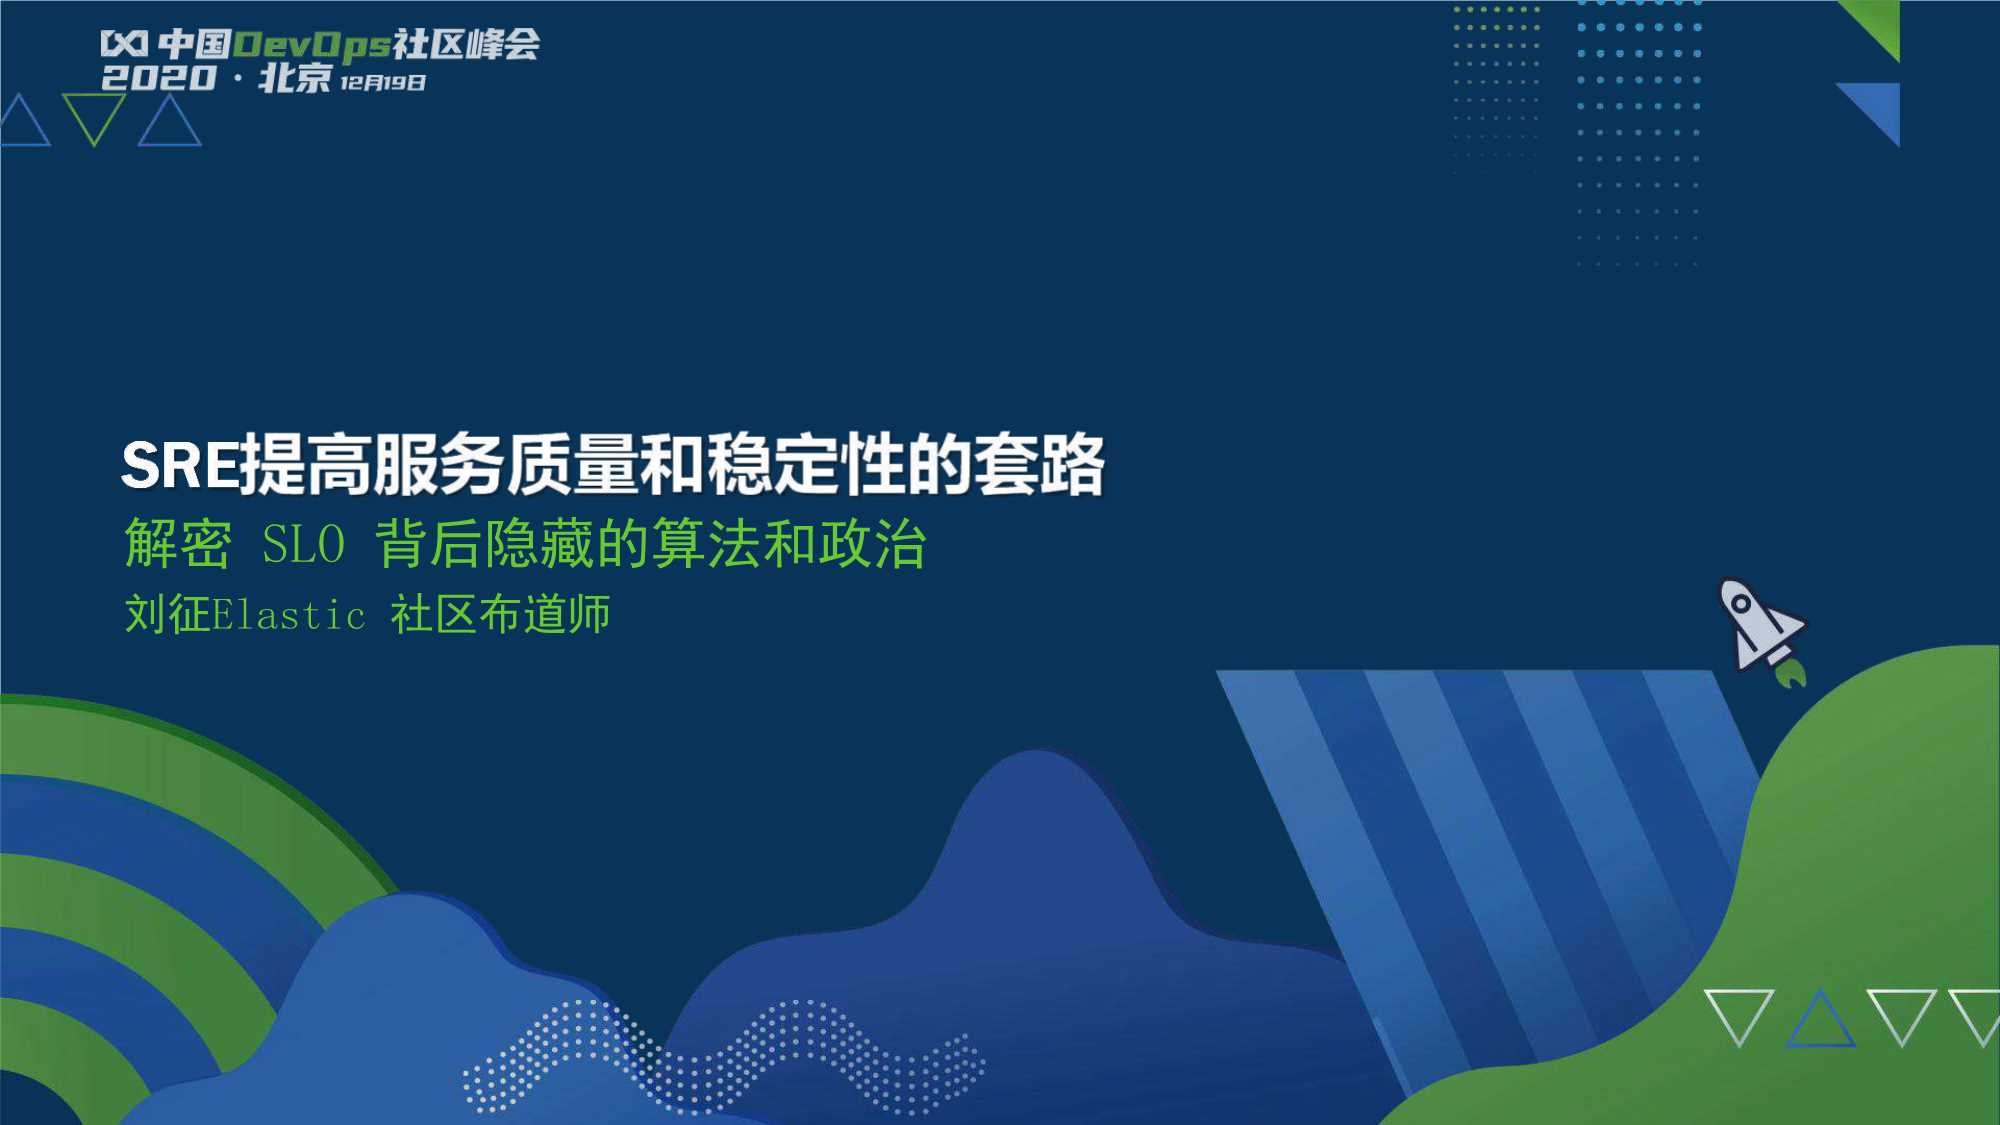 刘征-SRE提高服务质量和稳定性的套路-2020.12-32页